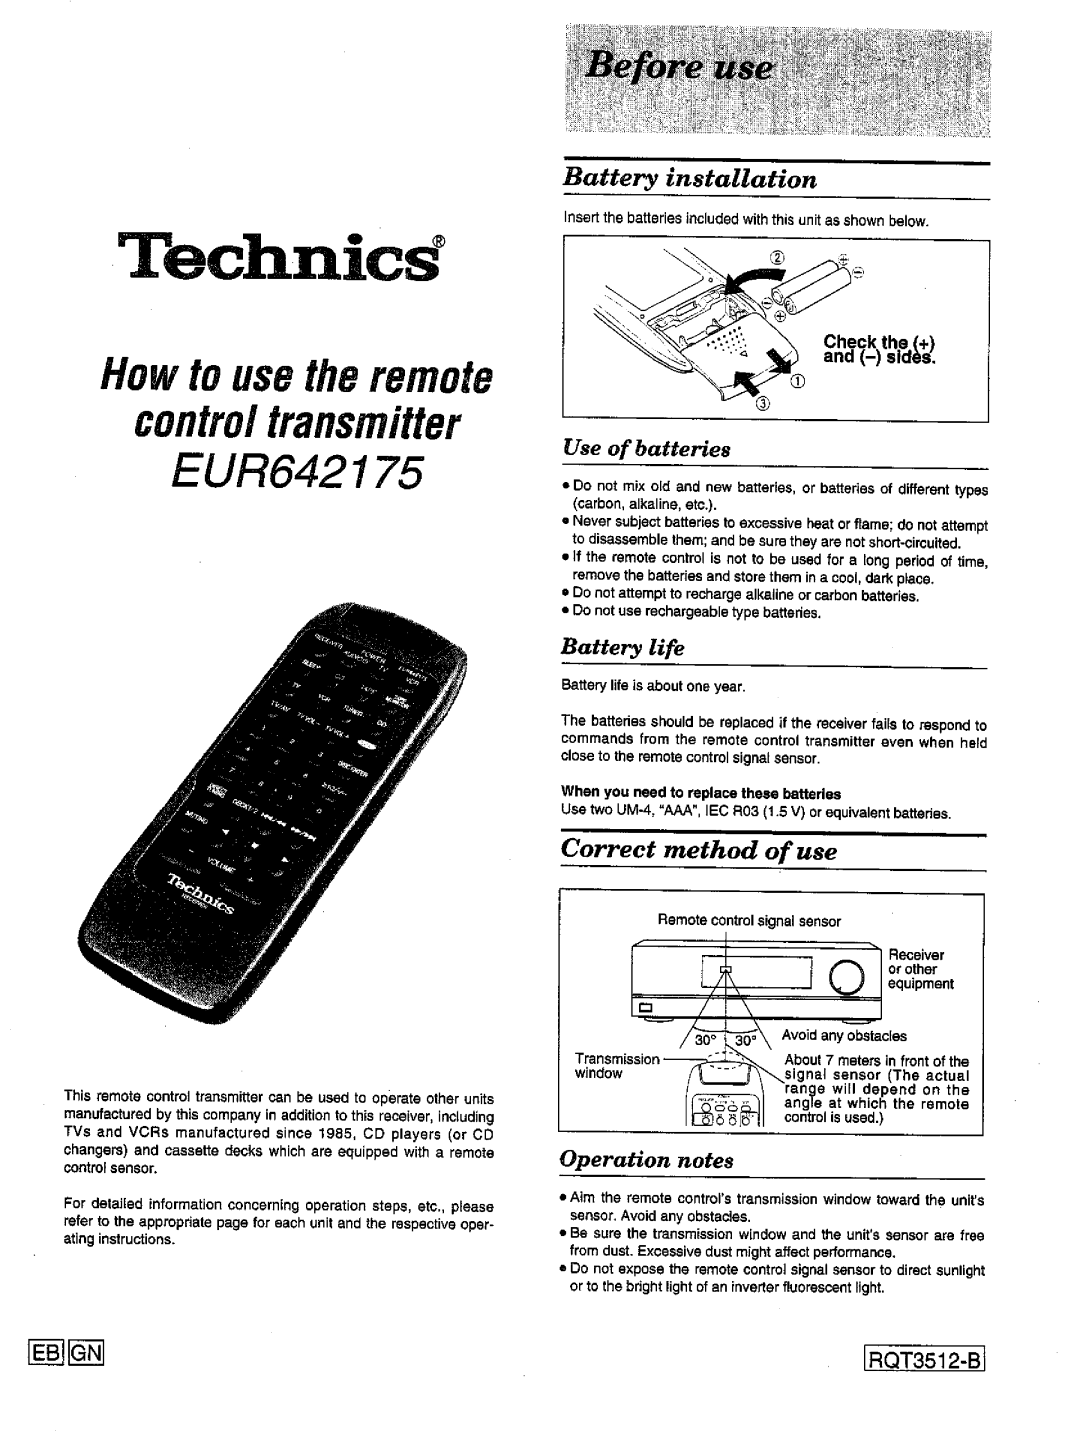 Technics SA-EX100, SA-EX300 manual 